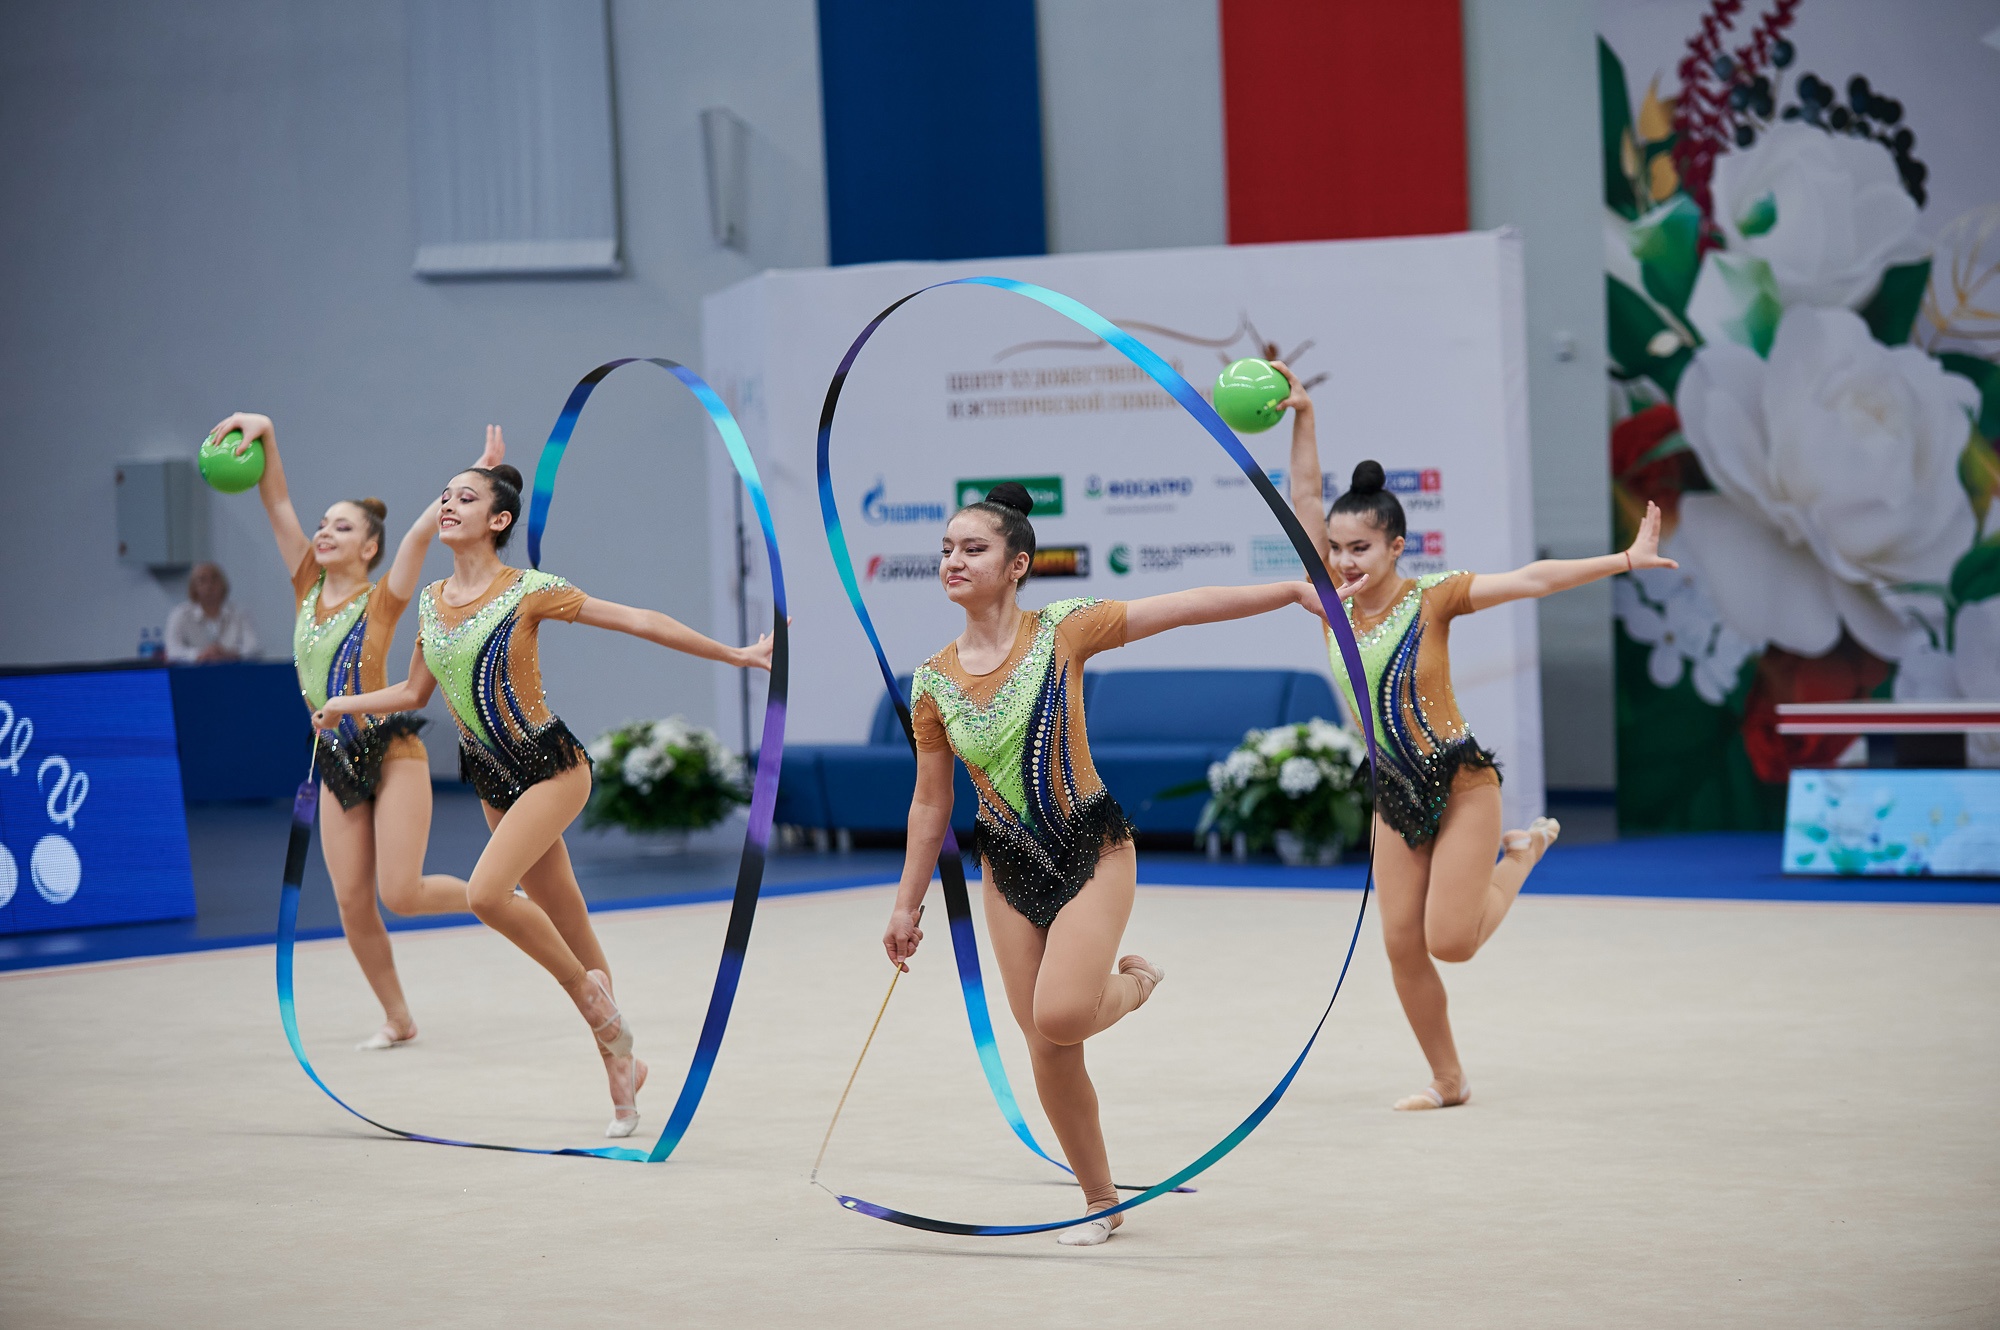 Соревнования по художественной гимнастике в Екатеринбурге установили новый российский рекорд